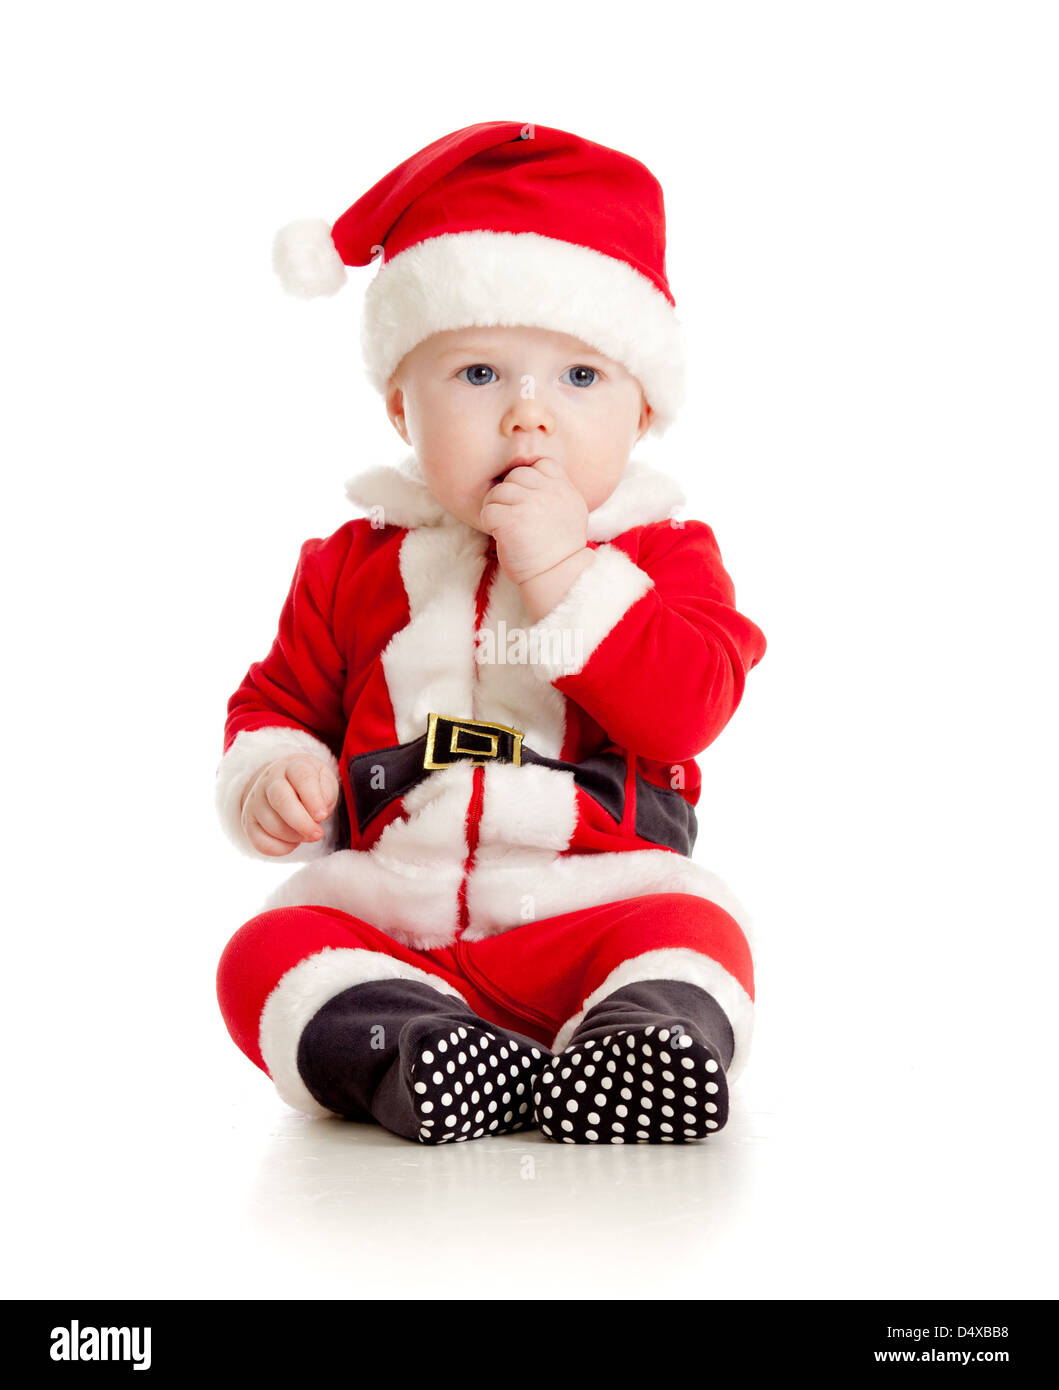 hielo Depresión preocuparse Lindo bebé en Santa Claus ropa Fotografía de stock - Alamy